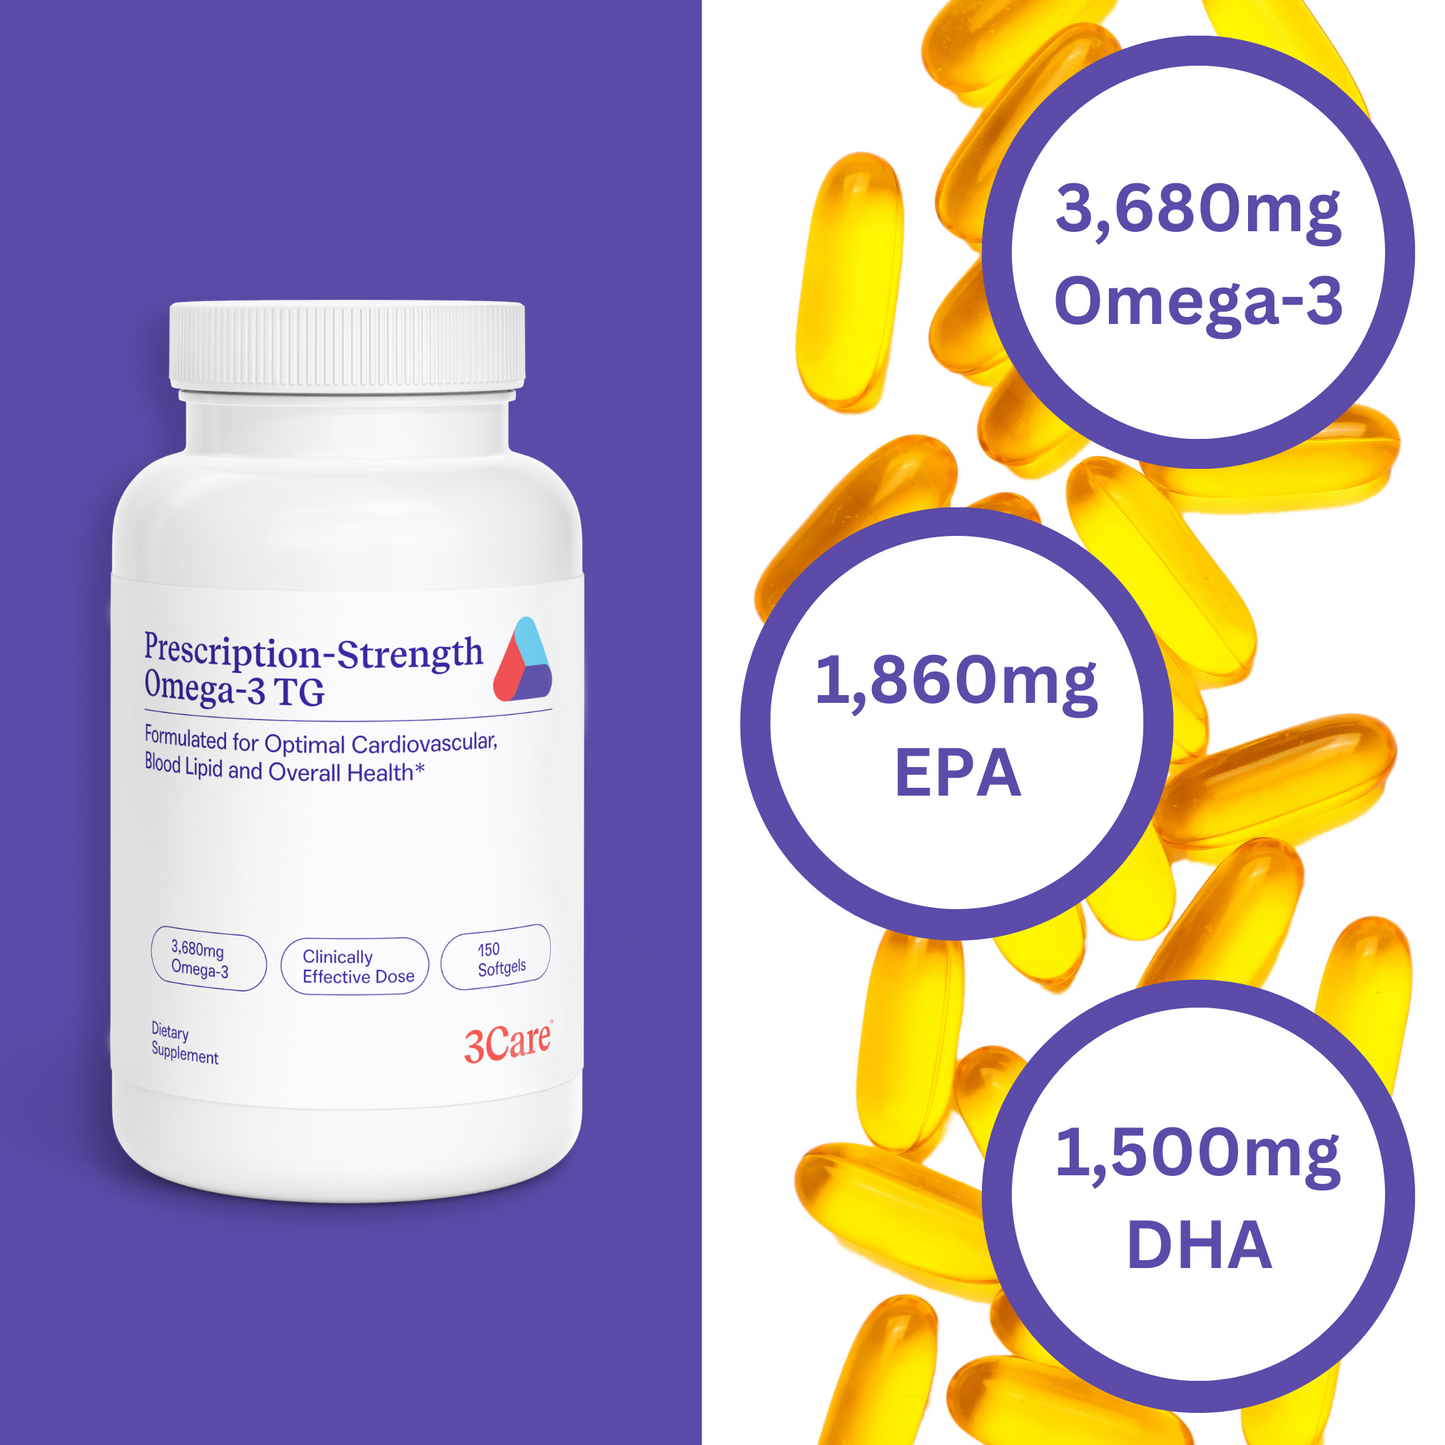 Prescription Strength Omega-3